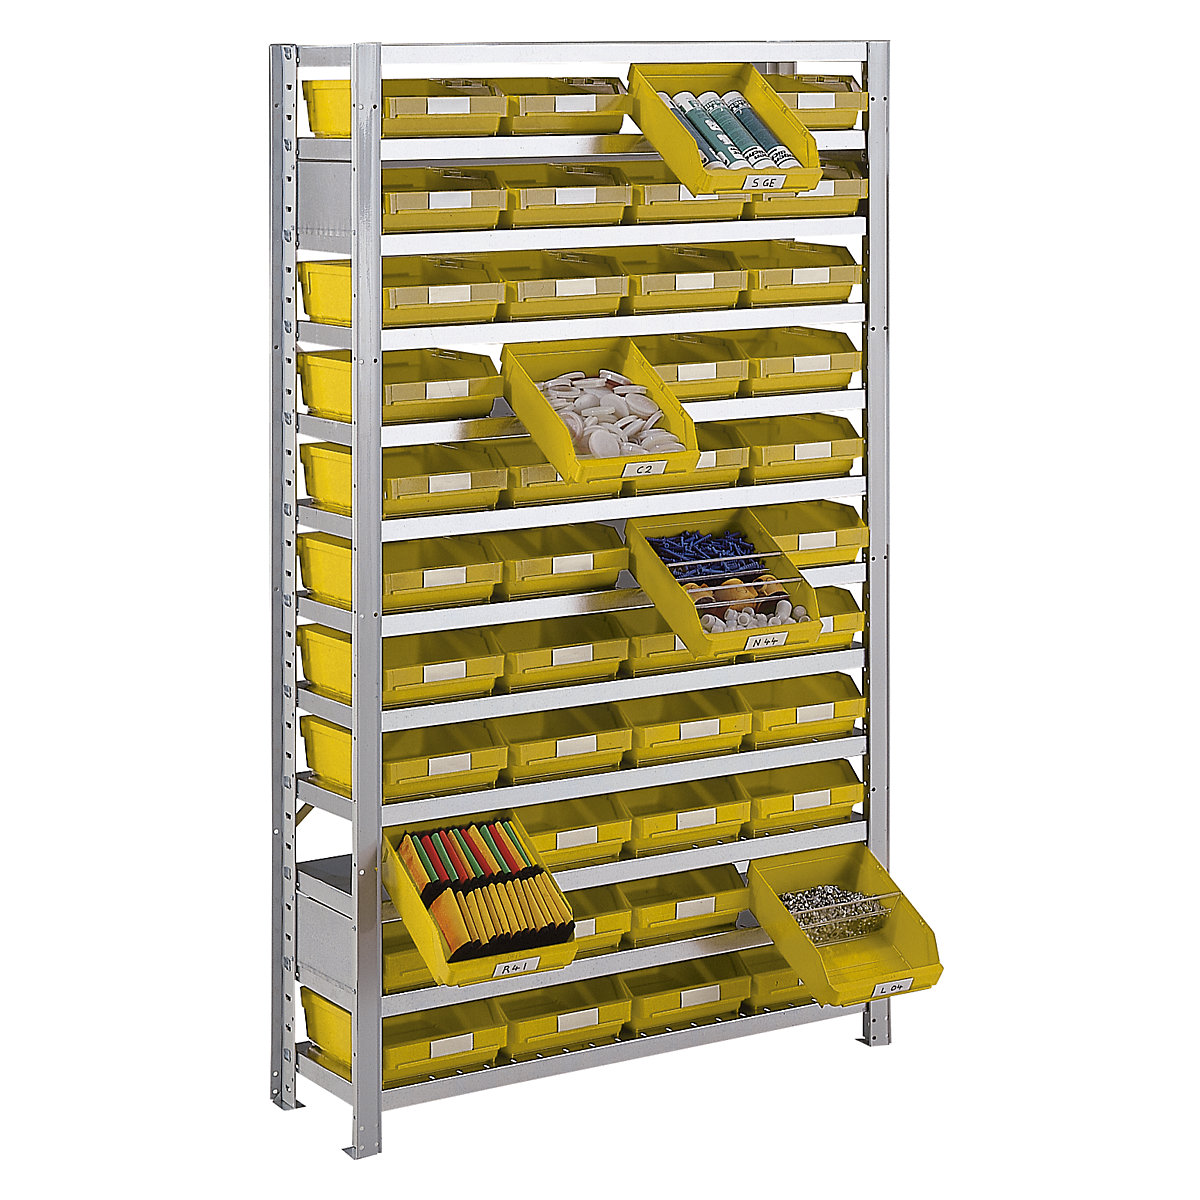 Estante de encaixar com caixas para estante – STEMO, altura da estante 1790 mm, estante básica, profundidade 400 mm, 32 caixas amarelas-27